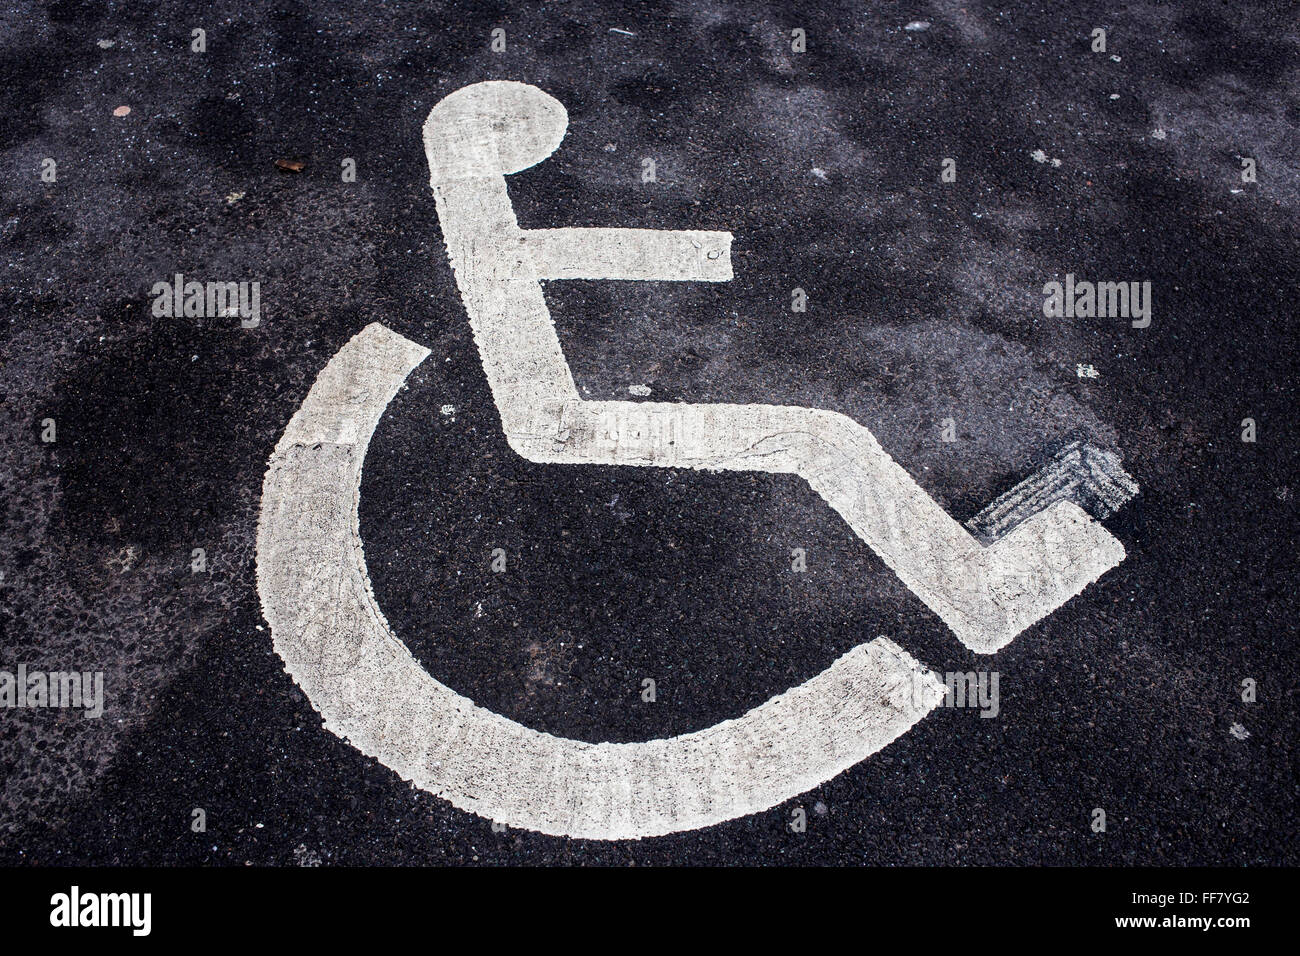 Rollstuhl-Abbildung Schablonen in weiße Linien auf Asphalt als ein Zeichen für einen behinderten Parkplatz Middlesborough, England, UK. Stockfoto